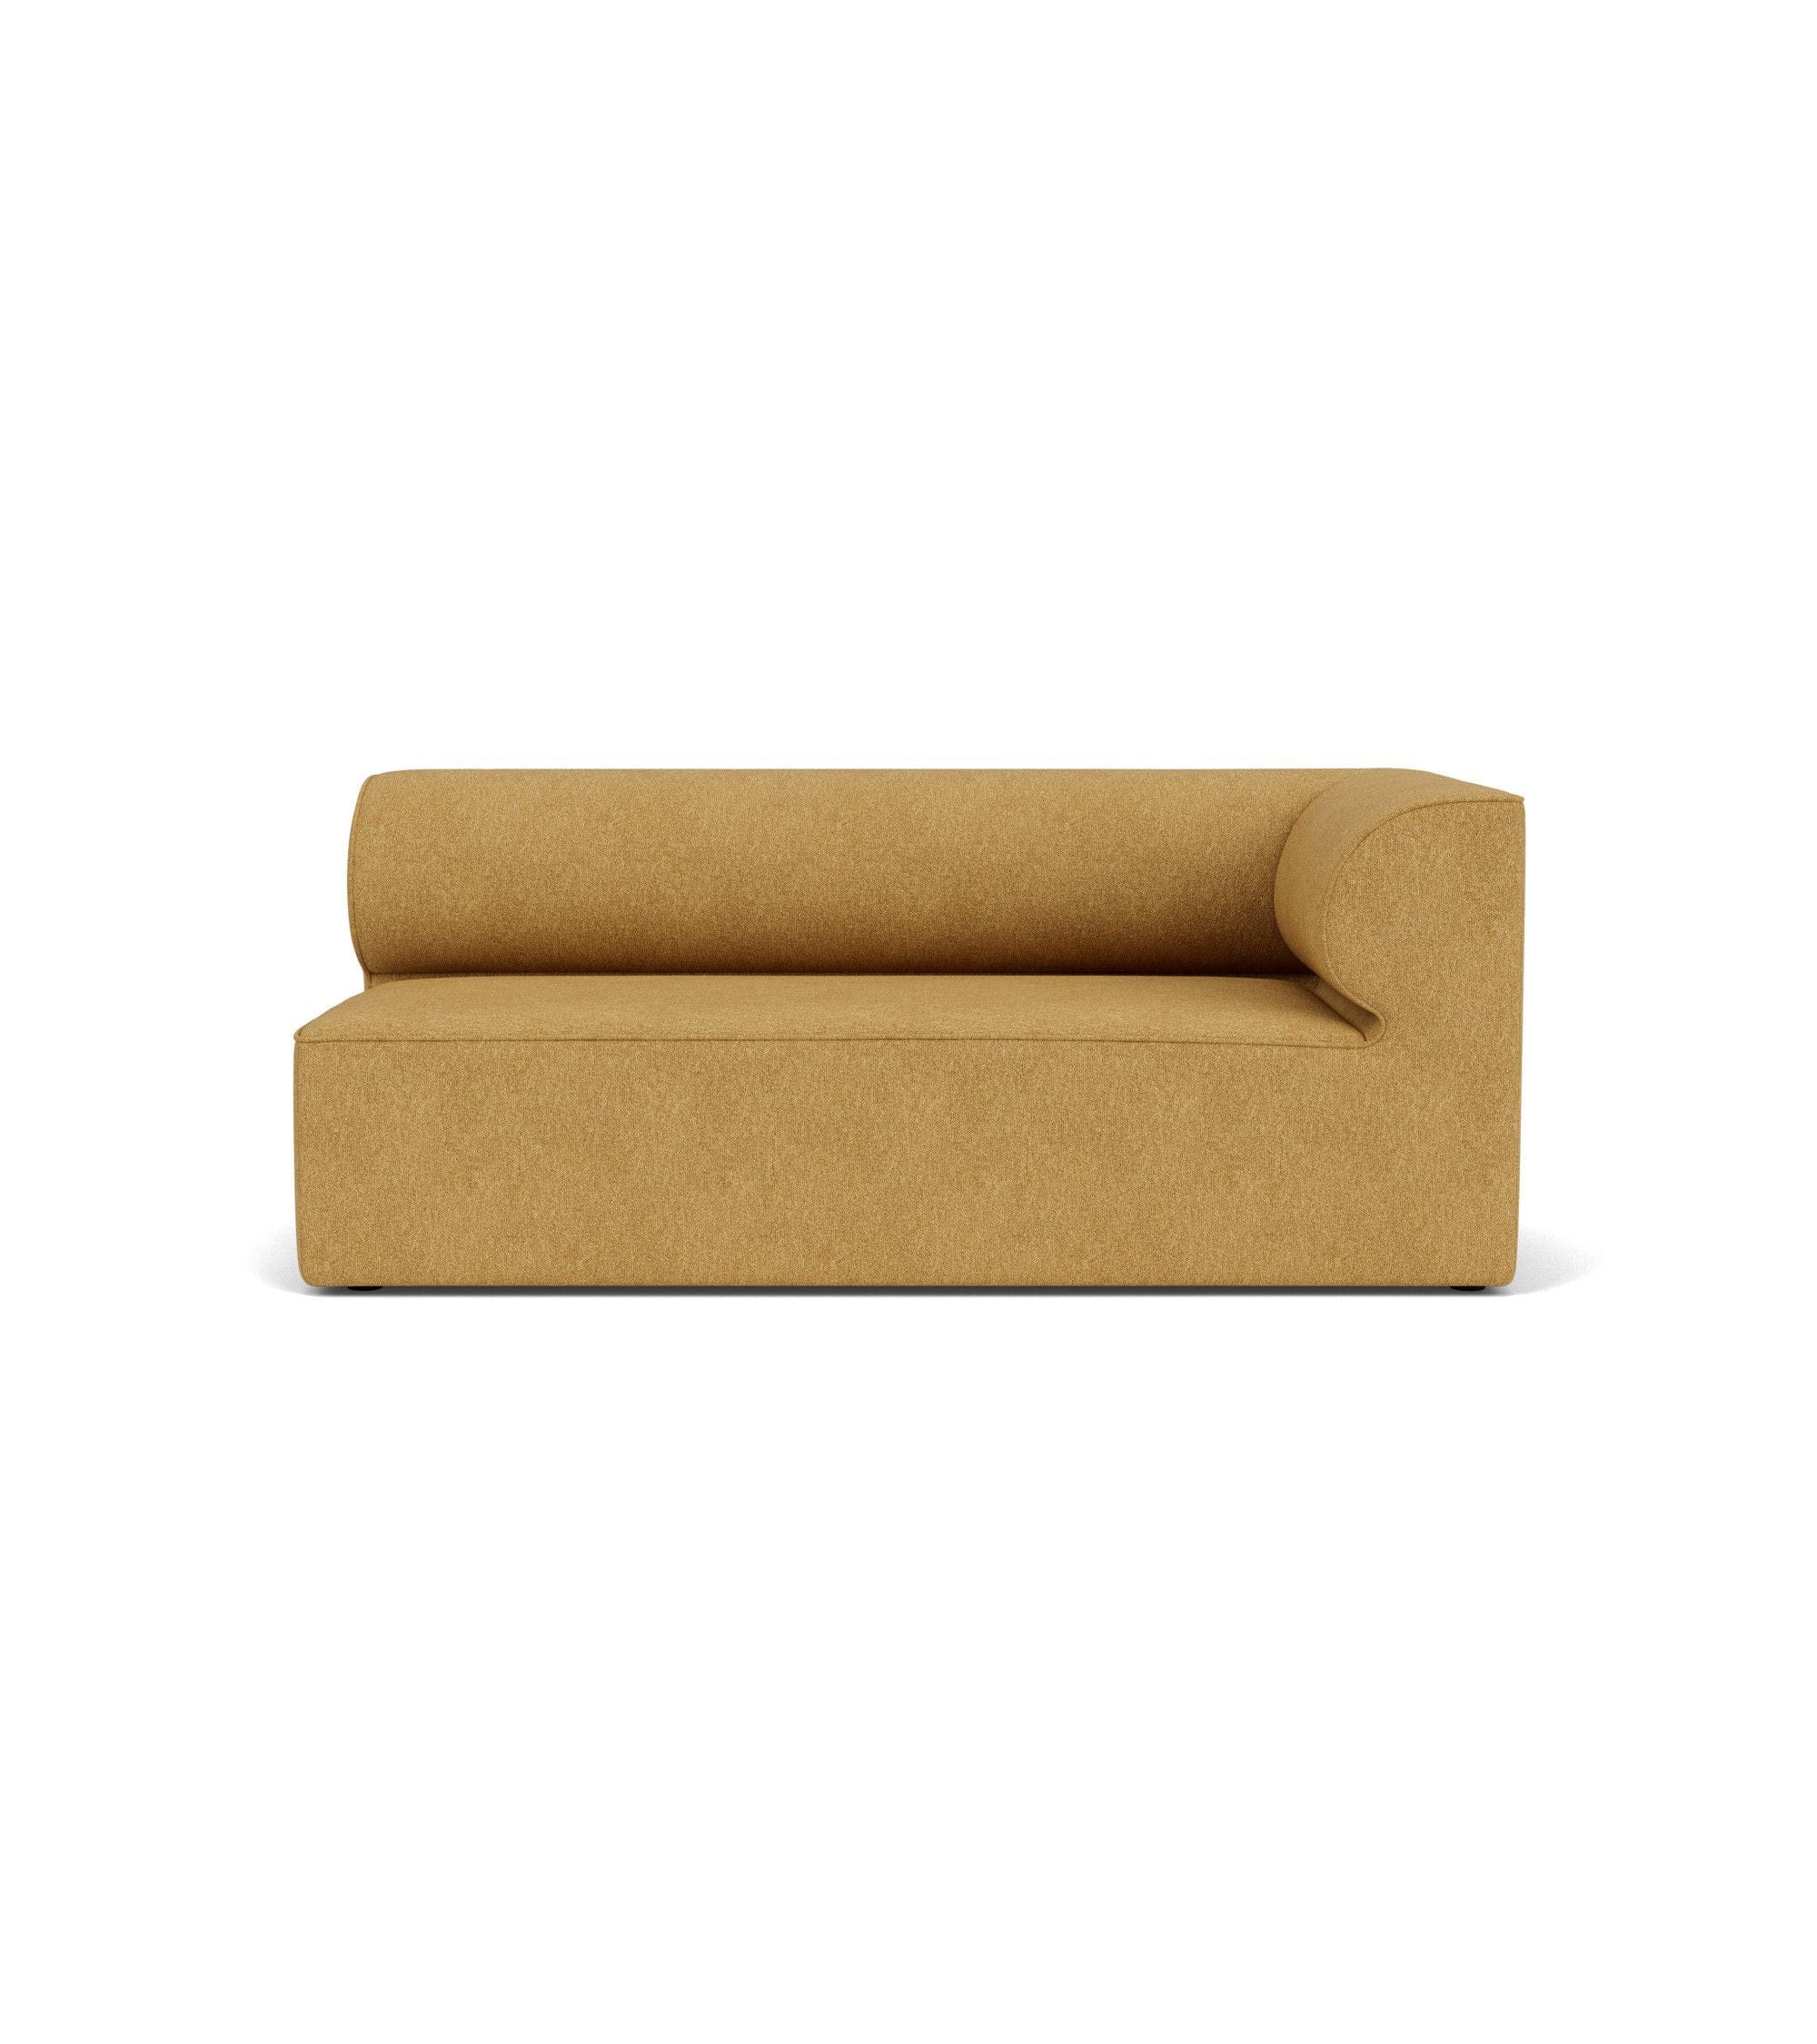 Audo Copenhagen Eave Modular Upholstered Sofa Corner Right, Moss Orange, 86x172 Cm